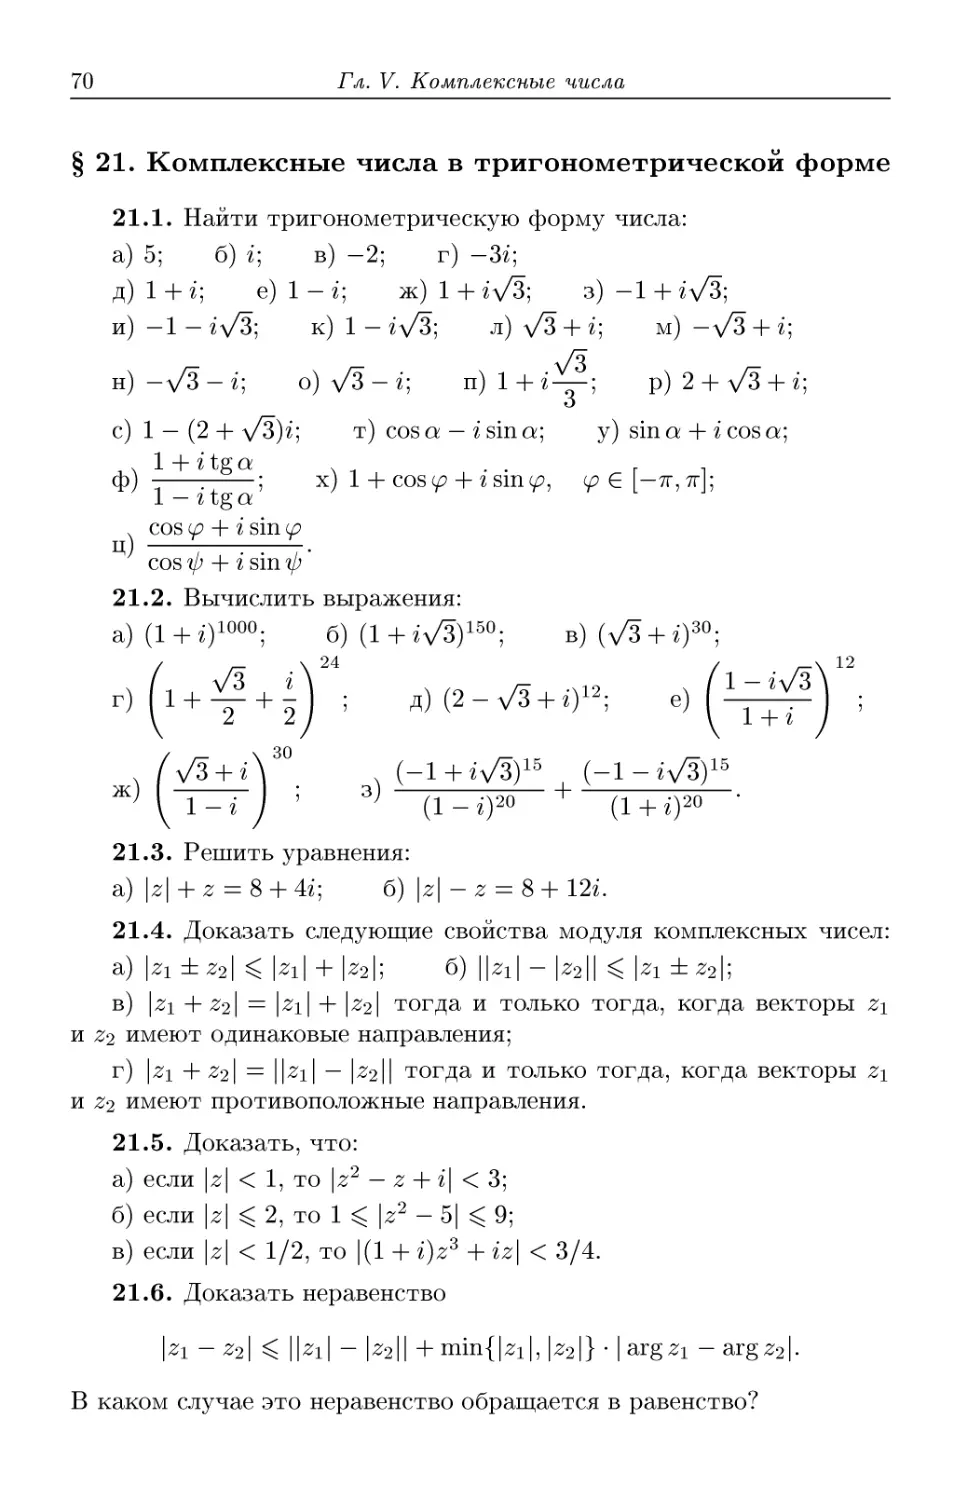 § 21. Комплексные числа в тригонометрической форме